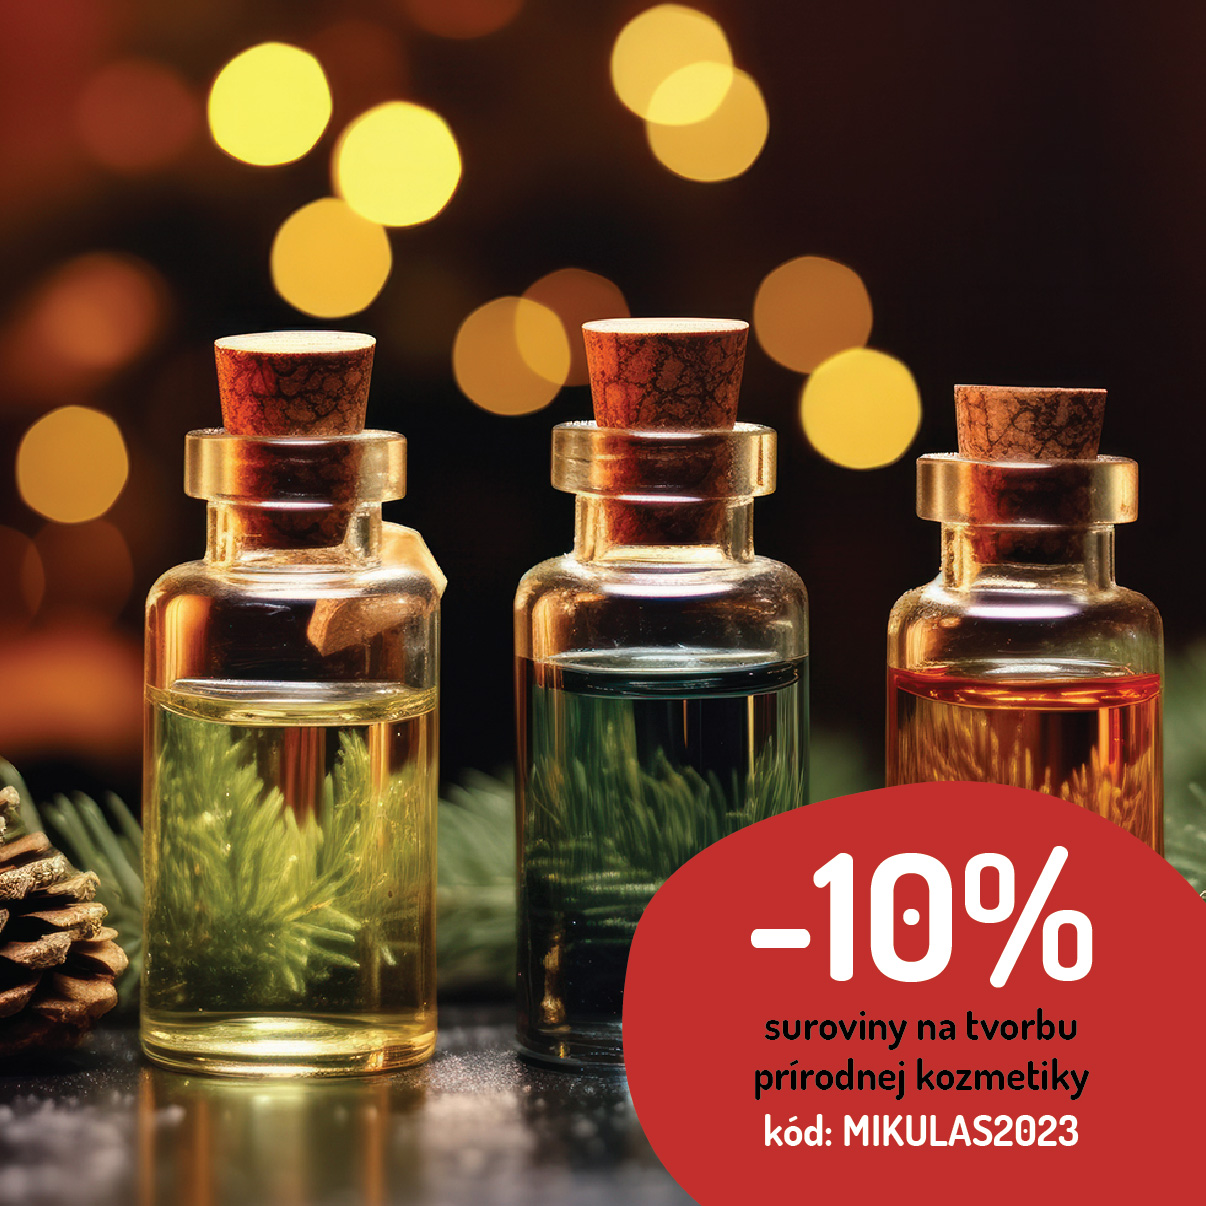 Mikulášska zľava -10% v Handymade na všetky suroviny na tvorbu prírodnej kozmetiky so svetielkami a voňavými éterickými olejmi v sklenených fľaštičkách.